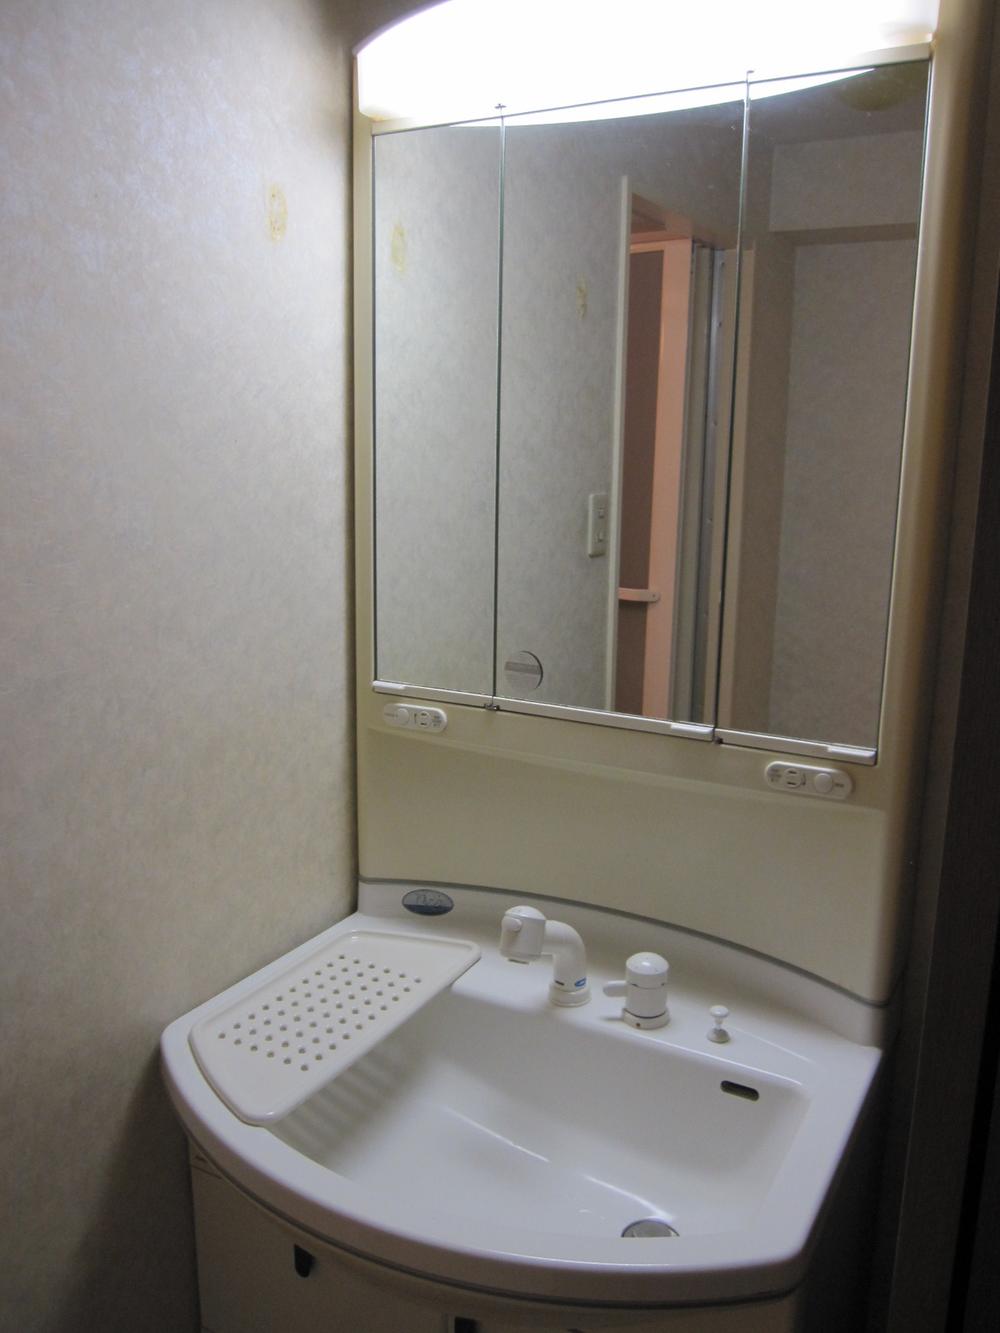 Wash basin, toilet. shower, Outlet, With defogging